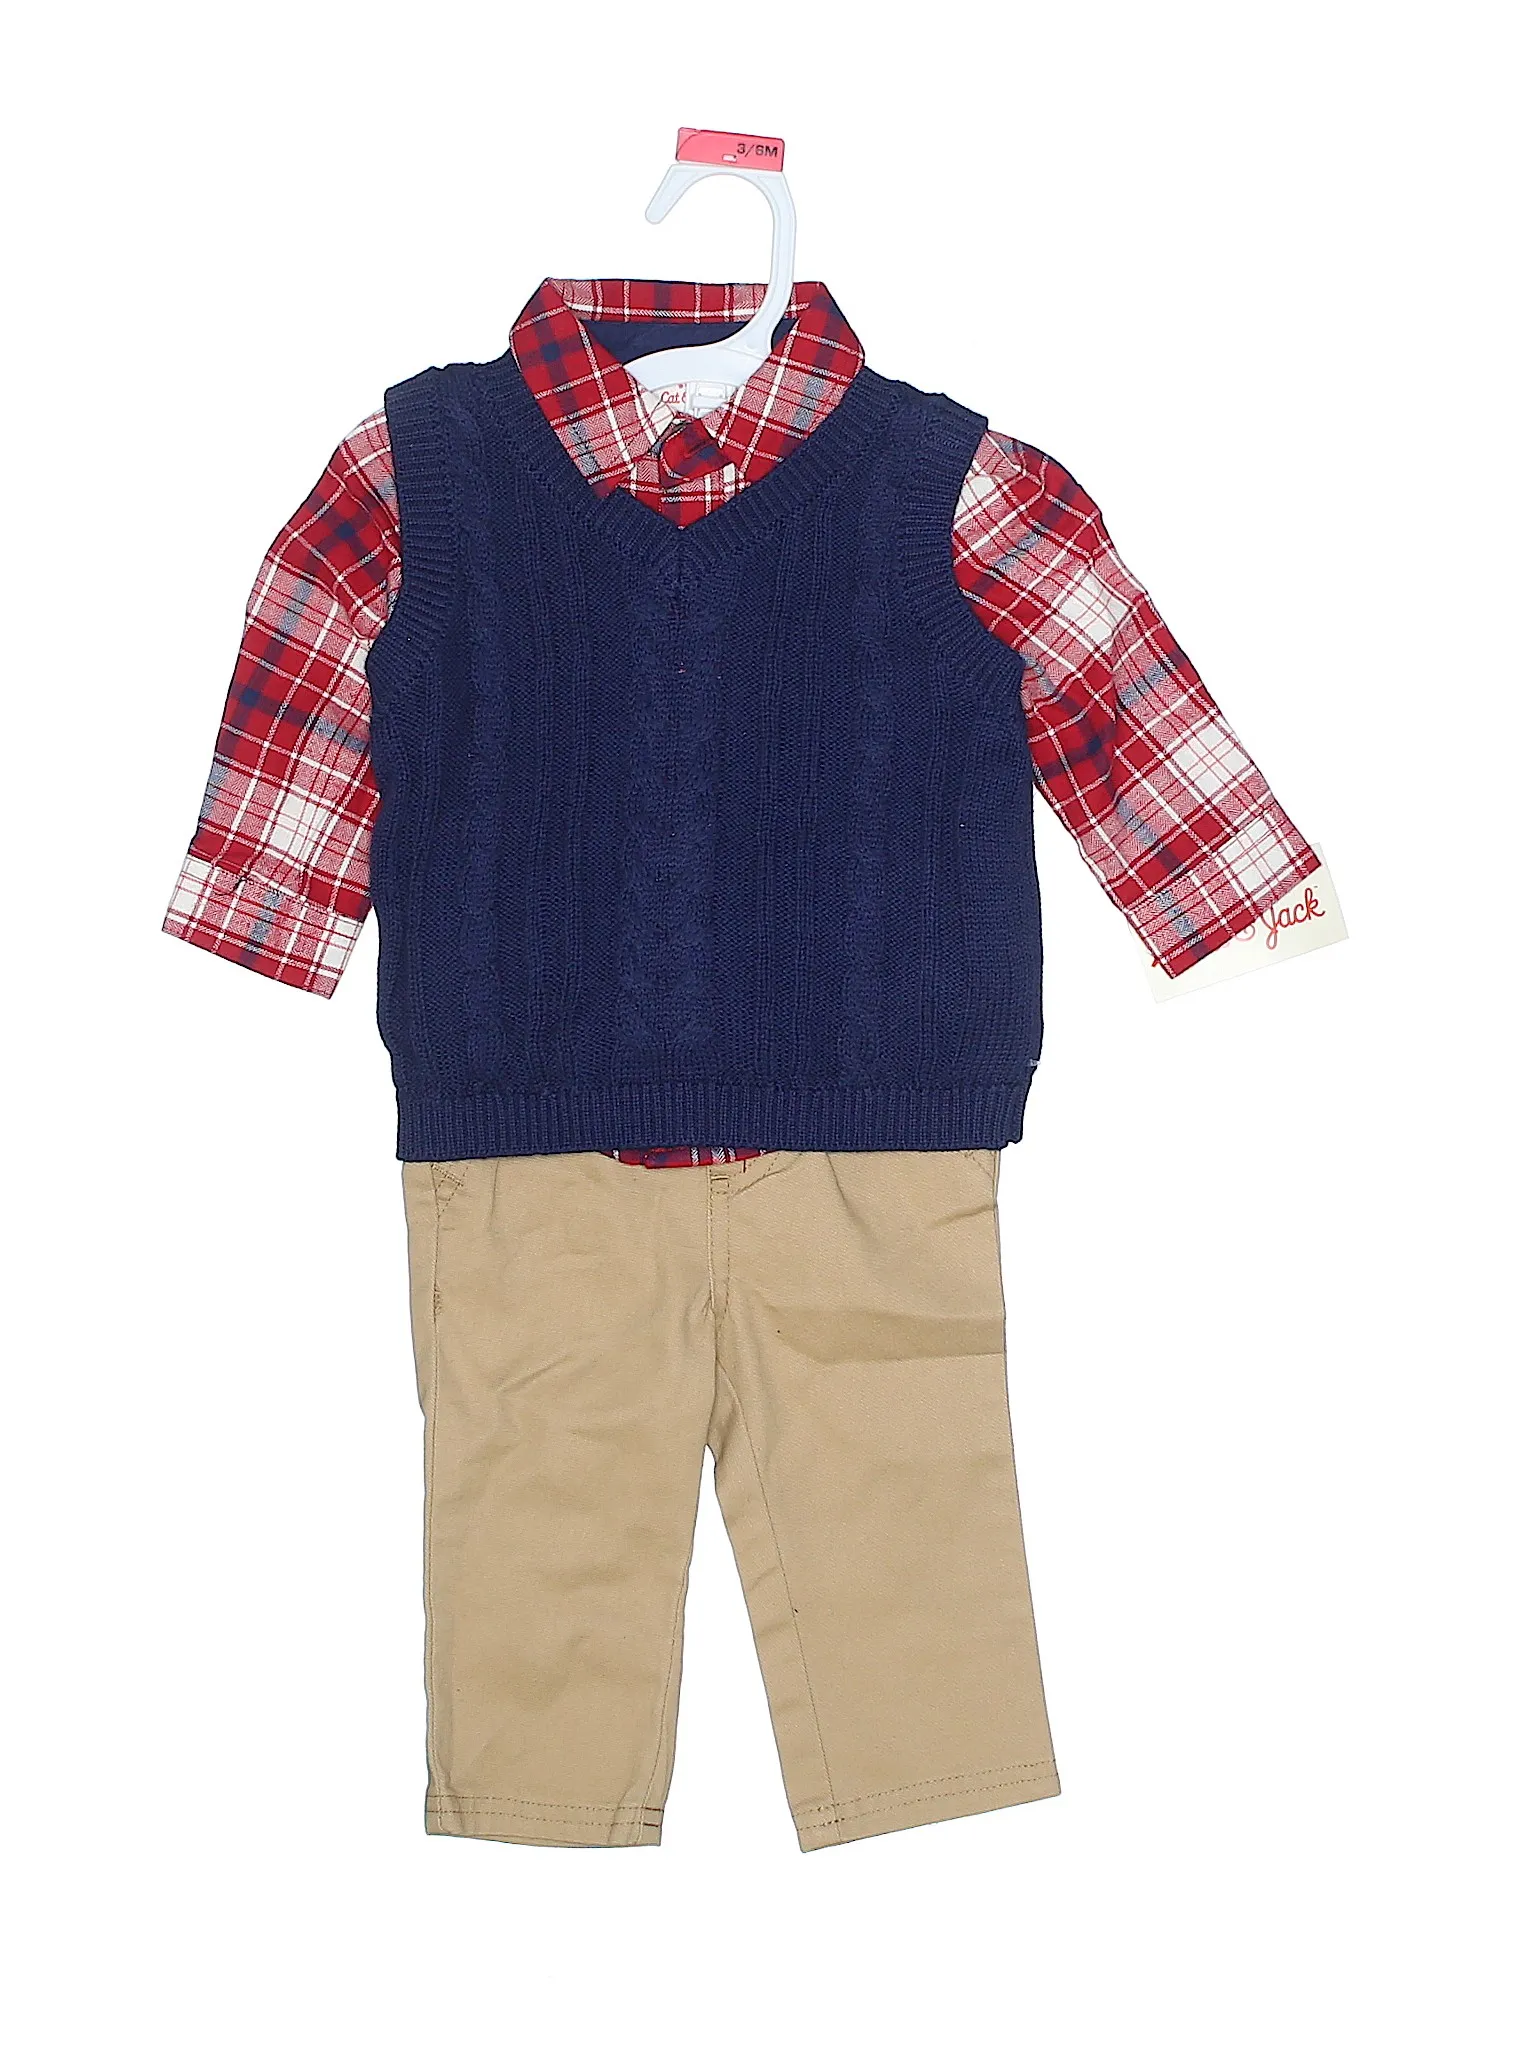 Baby Wholesale Clothing Iceland